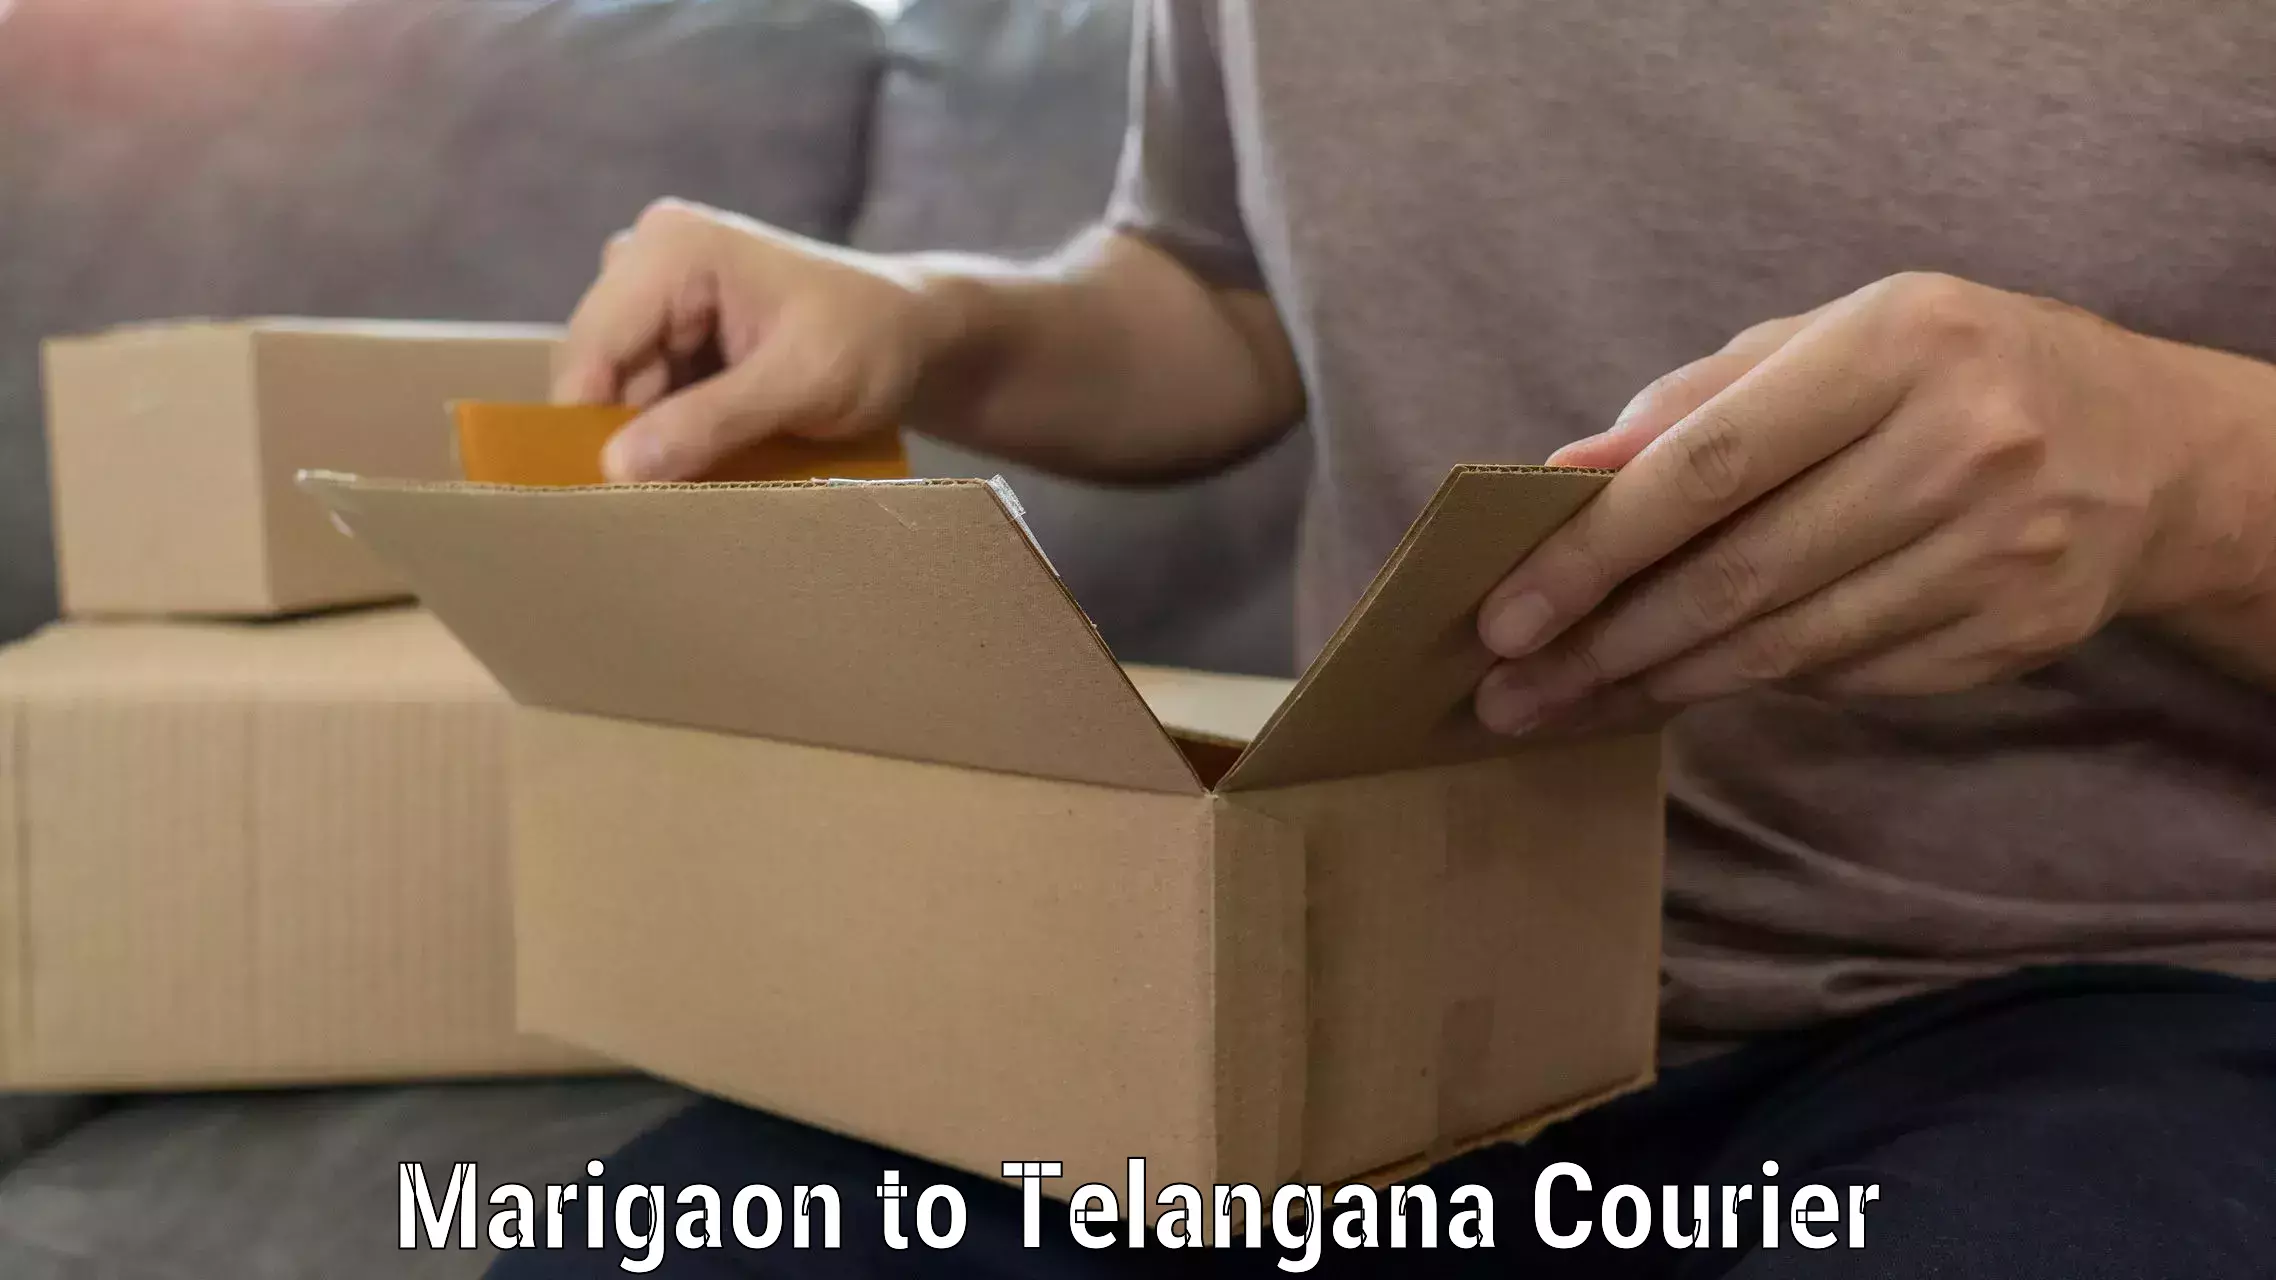 Quality moving company Marigaon to Nalgonda